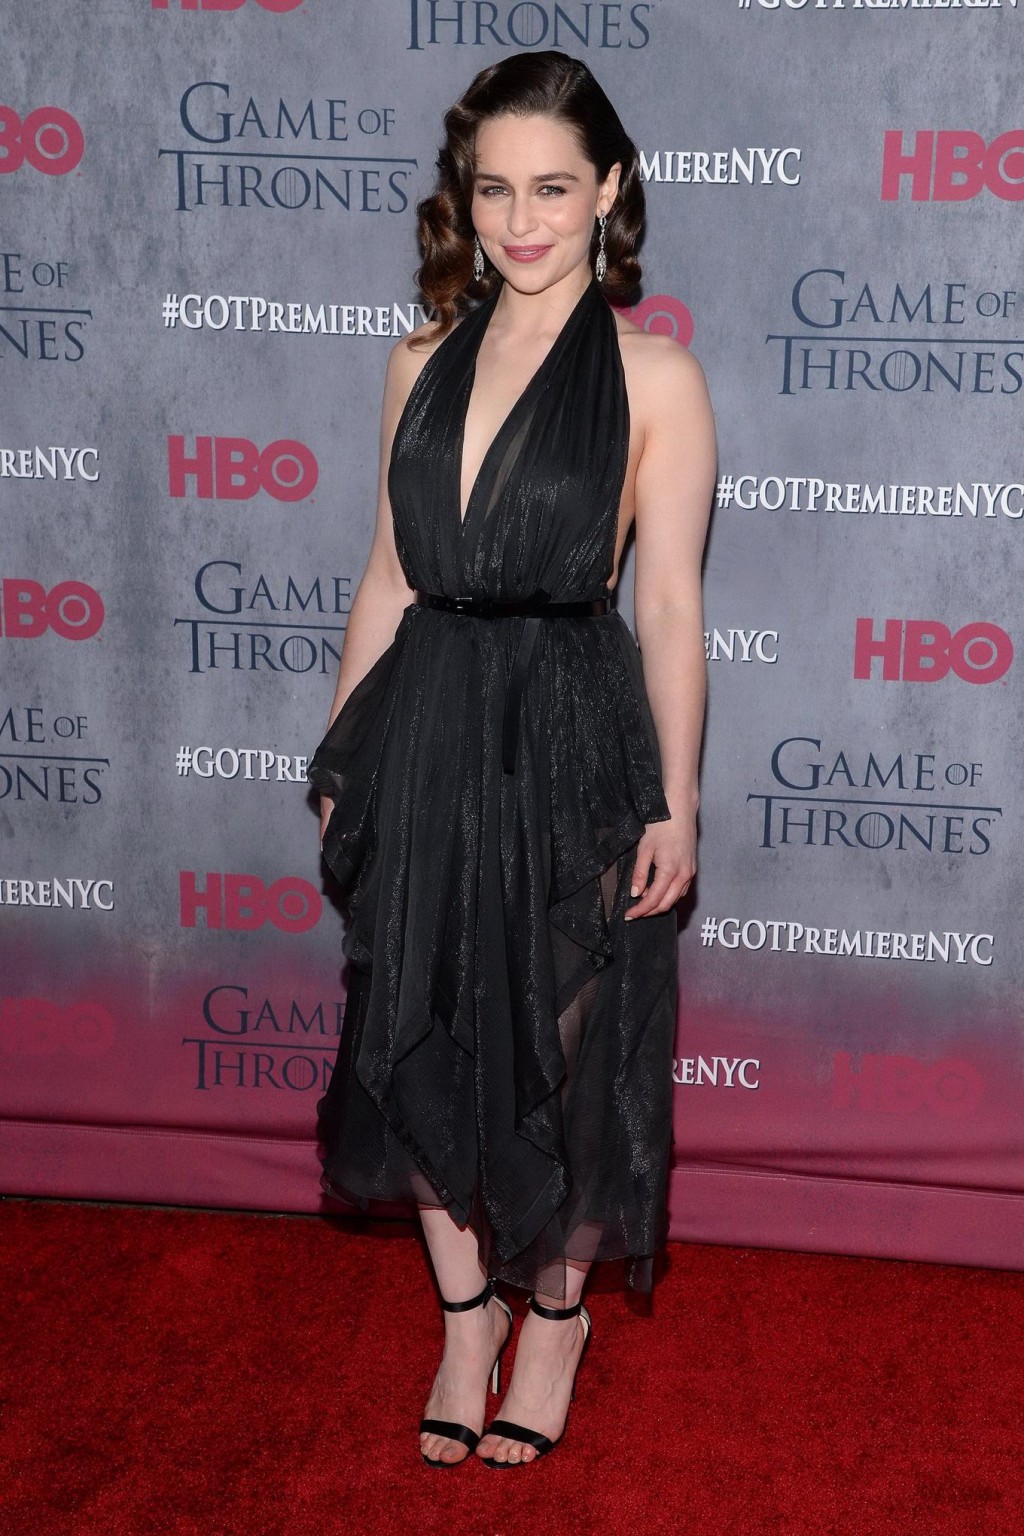 Emilia clarke braless trägt schwarzes, teilweise durchsichtiges Kleid bei der Game of t
 #75201484